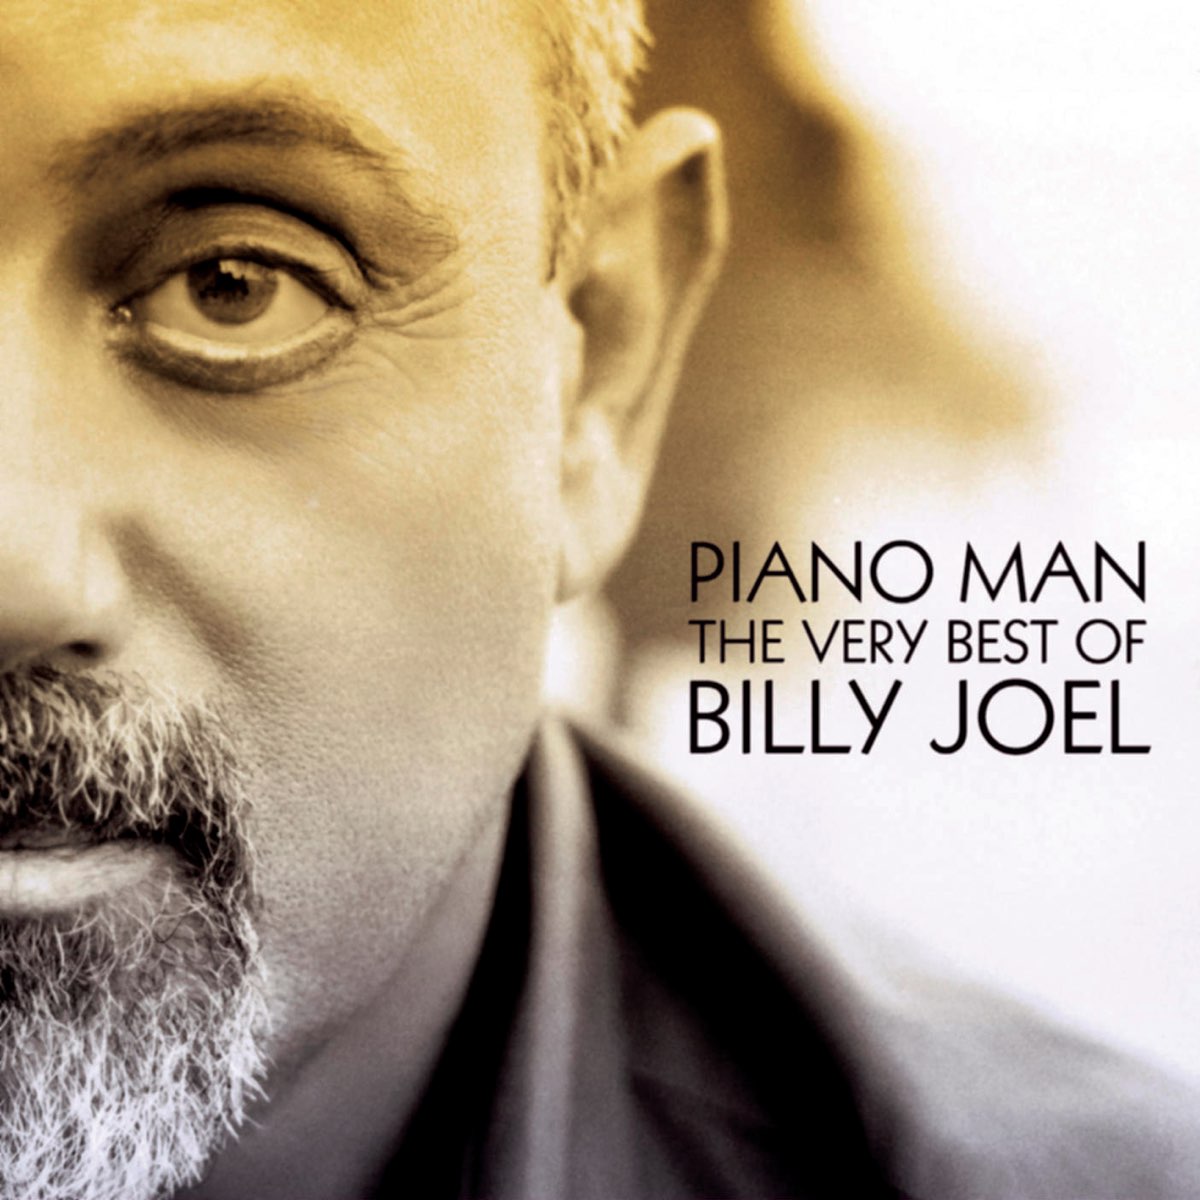 Billy joel honesty. Billy Joel. Billy Joel CD. Billy Joel - Piano man - the very best of Billy Joel. Billy Joel Piano man.